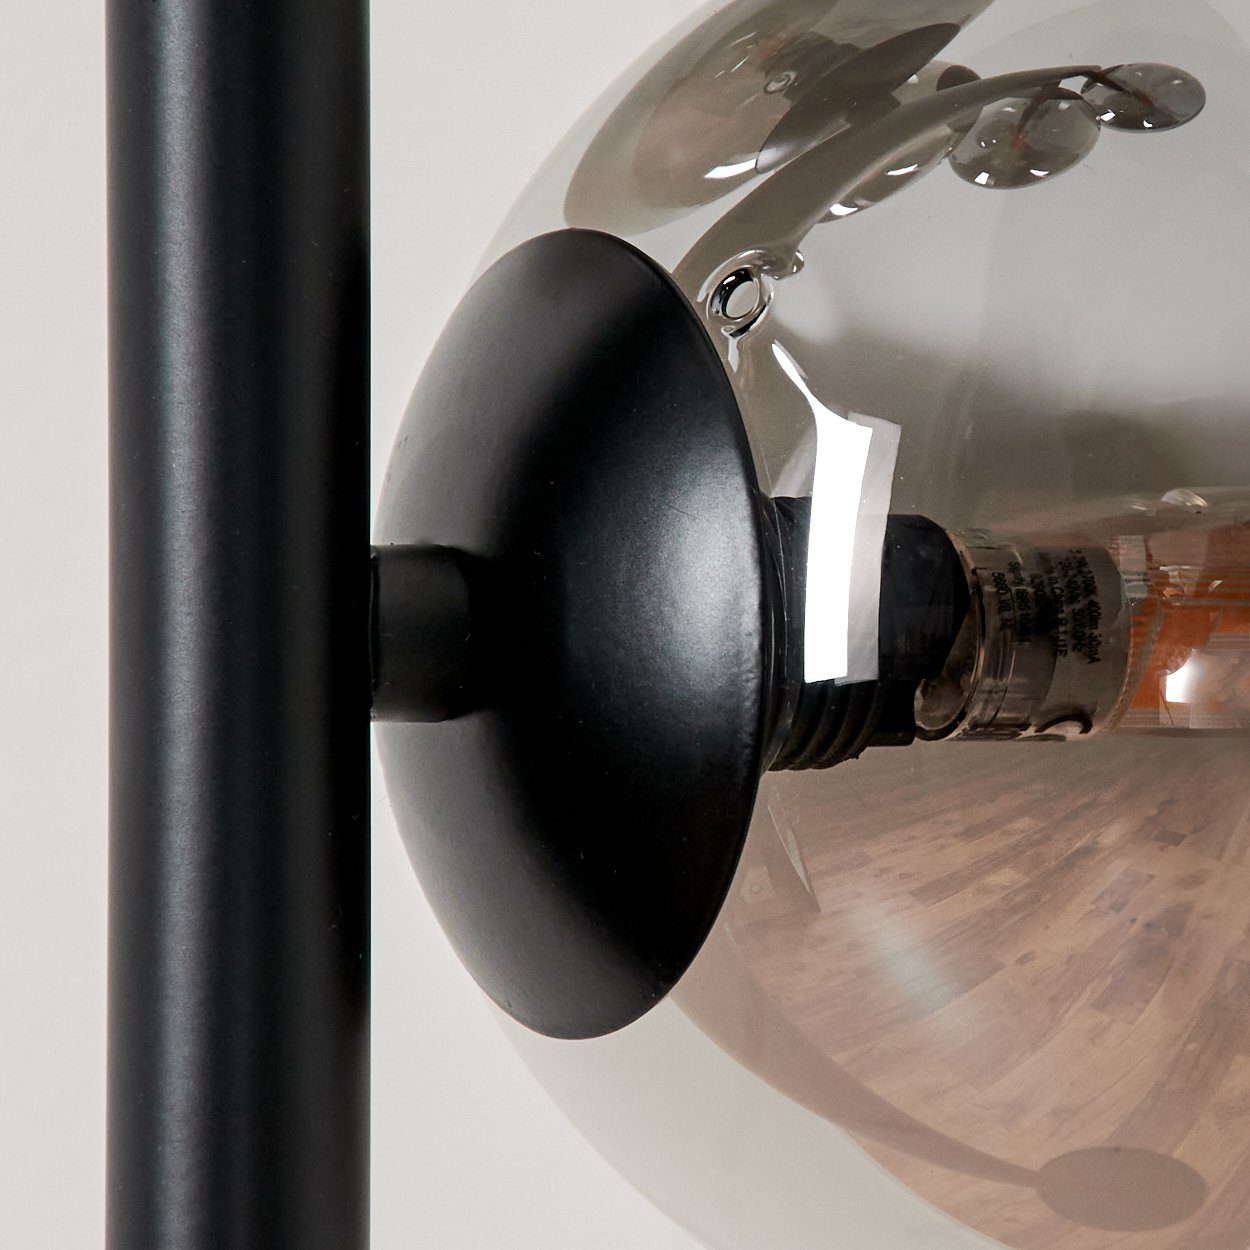 Schwarz/Rauchfarben, x Retro-Design aus aus G9, Stehlampe in Stehlampe im Standlampe ohne Glas, Leuchtmittel Metall/Glas 5 hofstein Leuchtmittel, ohne